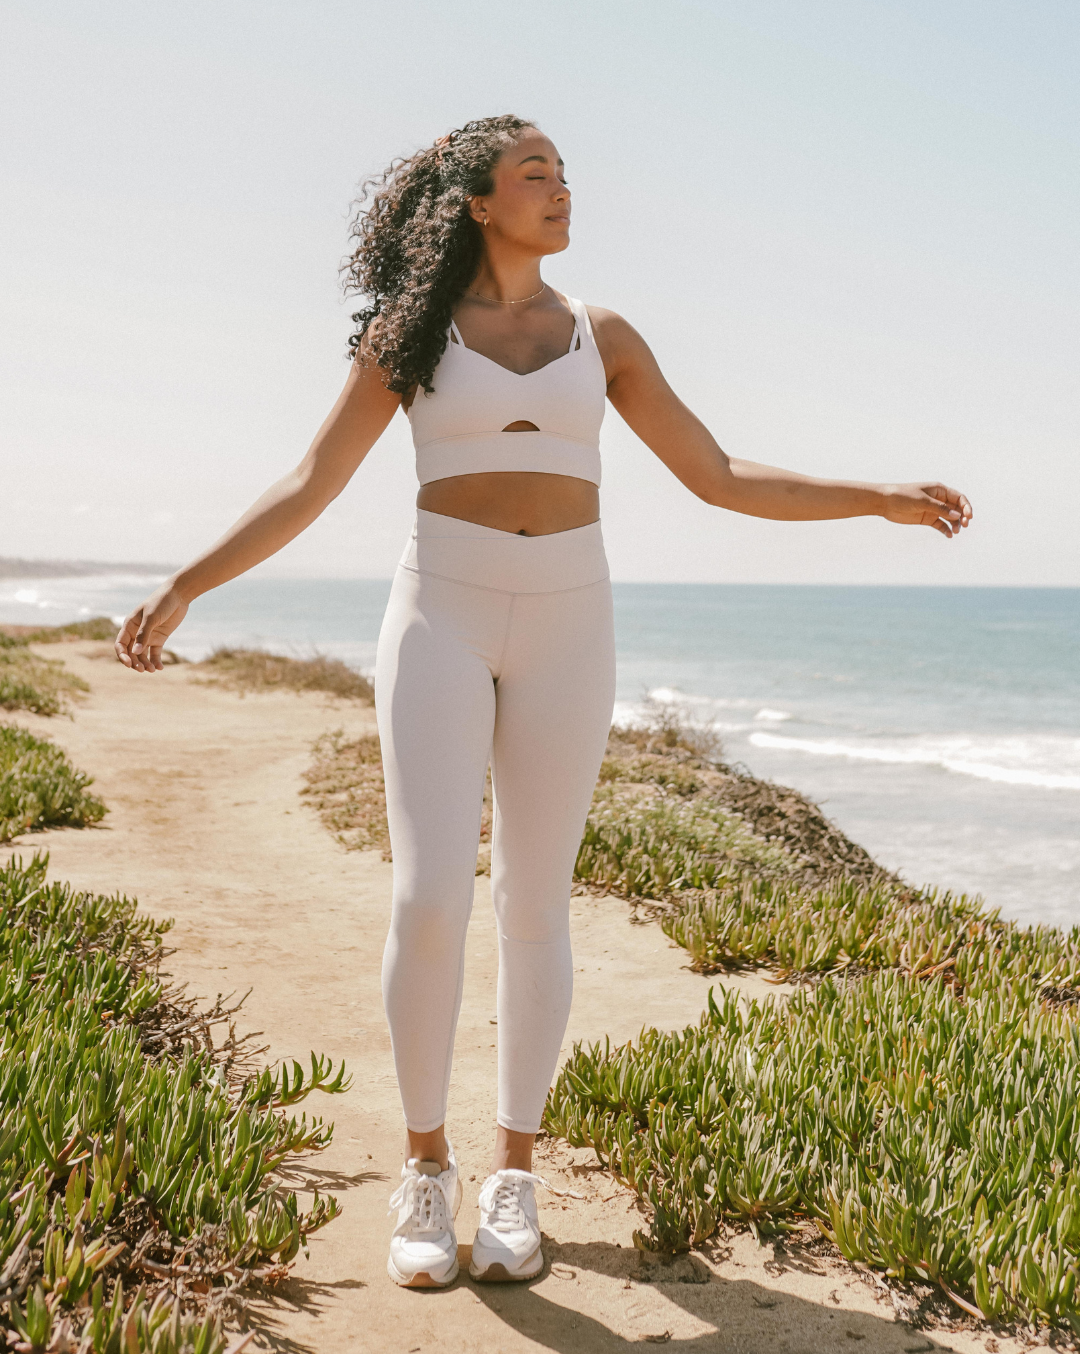 
                  
                    Squatproof white yoga leggings for women
                  
                